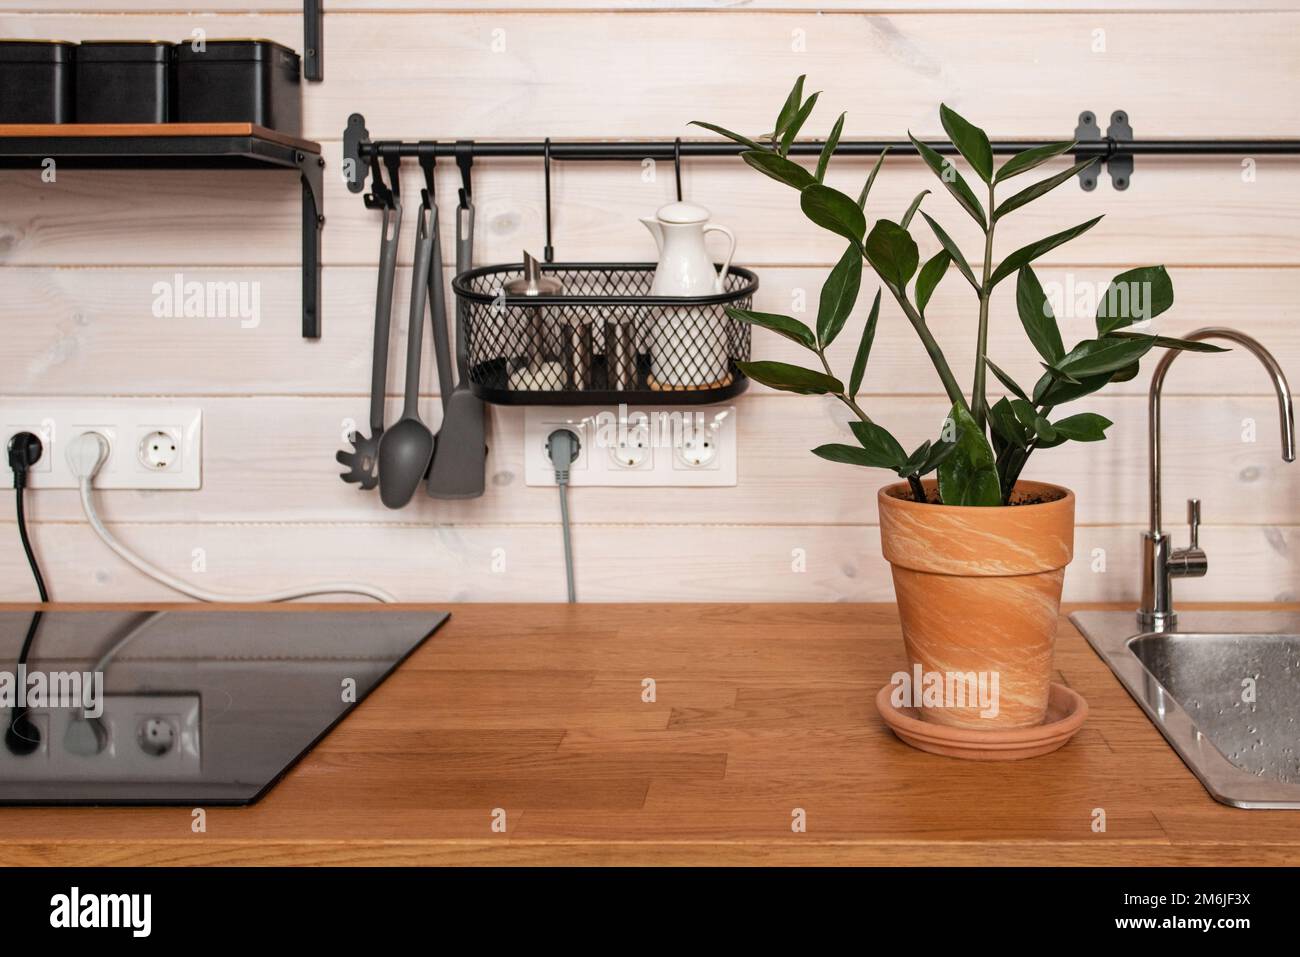 Küchenutensilien aus Messing, Küchenzubehör. Hängeküche mit weißen Fliesen an der Wand und Holztisch. Grüne Pflanze auf Küchenrückseite Stockfoto